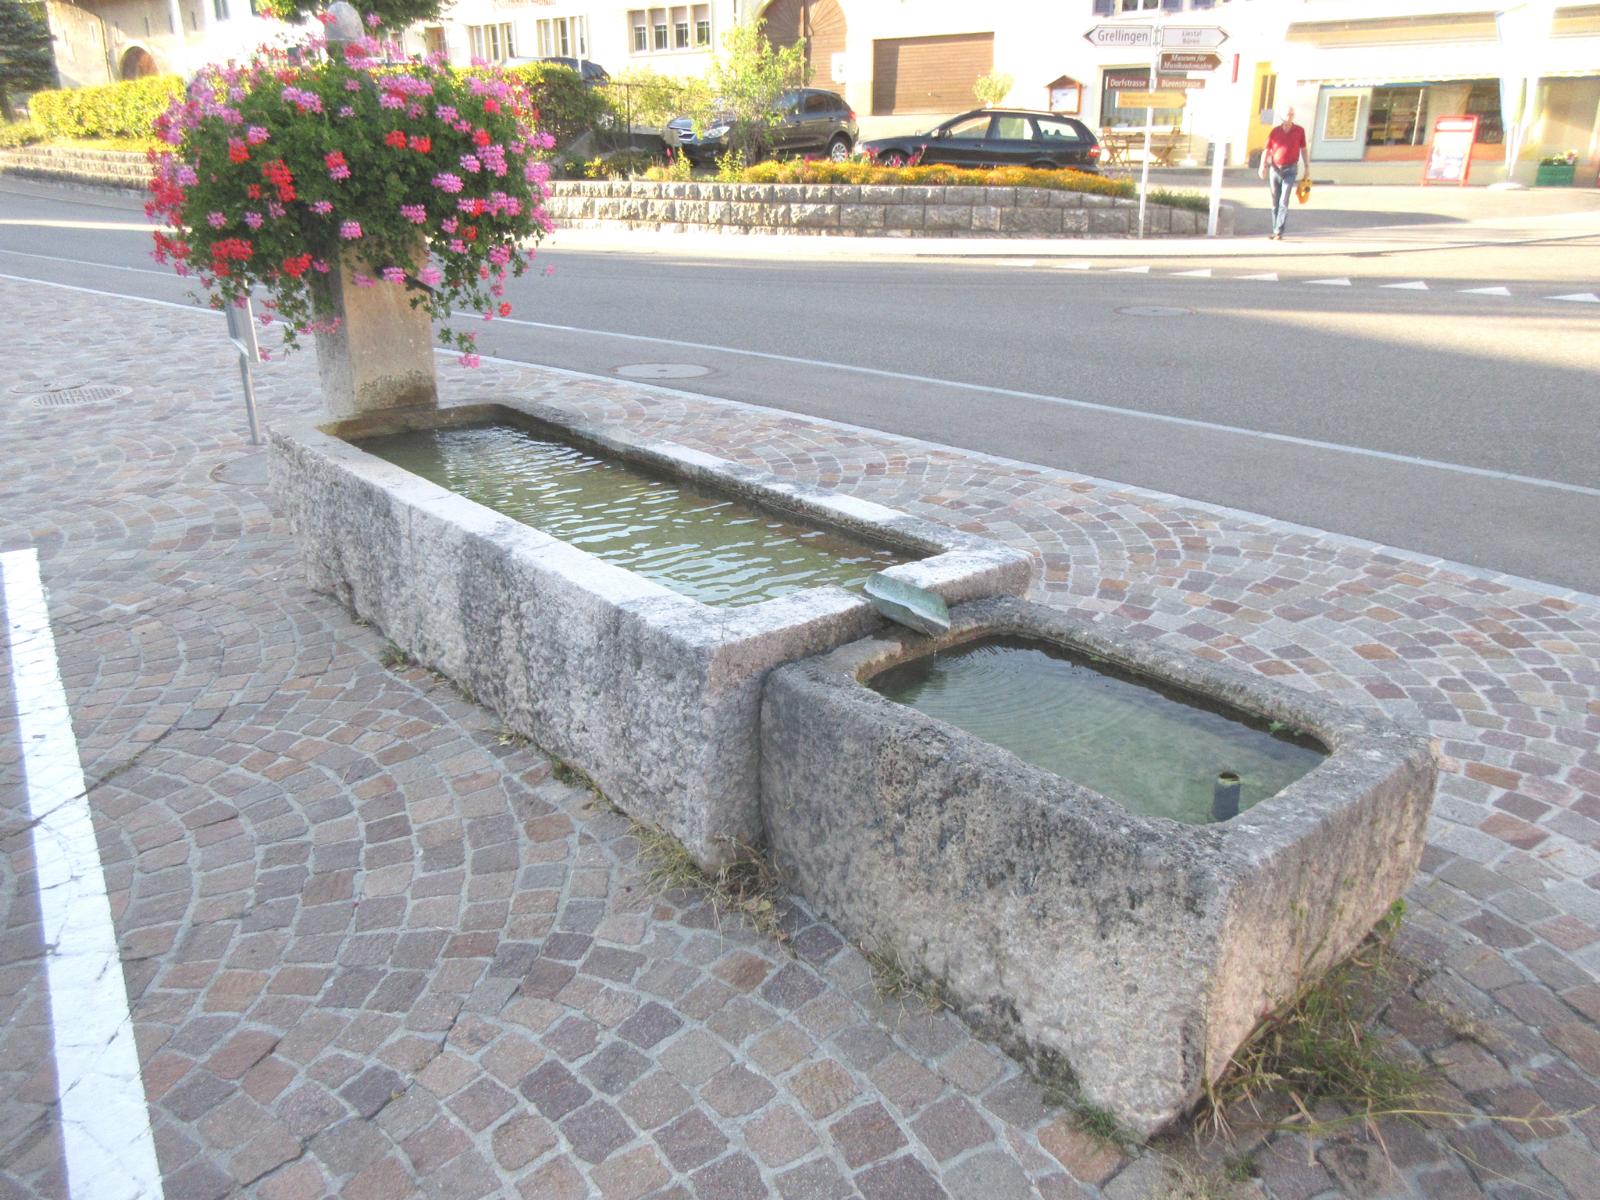 Dorfstrasse *** 2003 (datiert Metallgestell für Blumen) *** Laufener Kalkstein (Monolith 2.7 x 1.0 m) *** Laufener Kalkstein *** Wasser von lokaler Quelle ("Kein Trinkwasser")